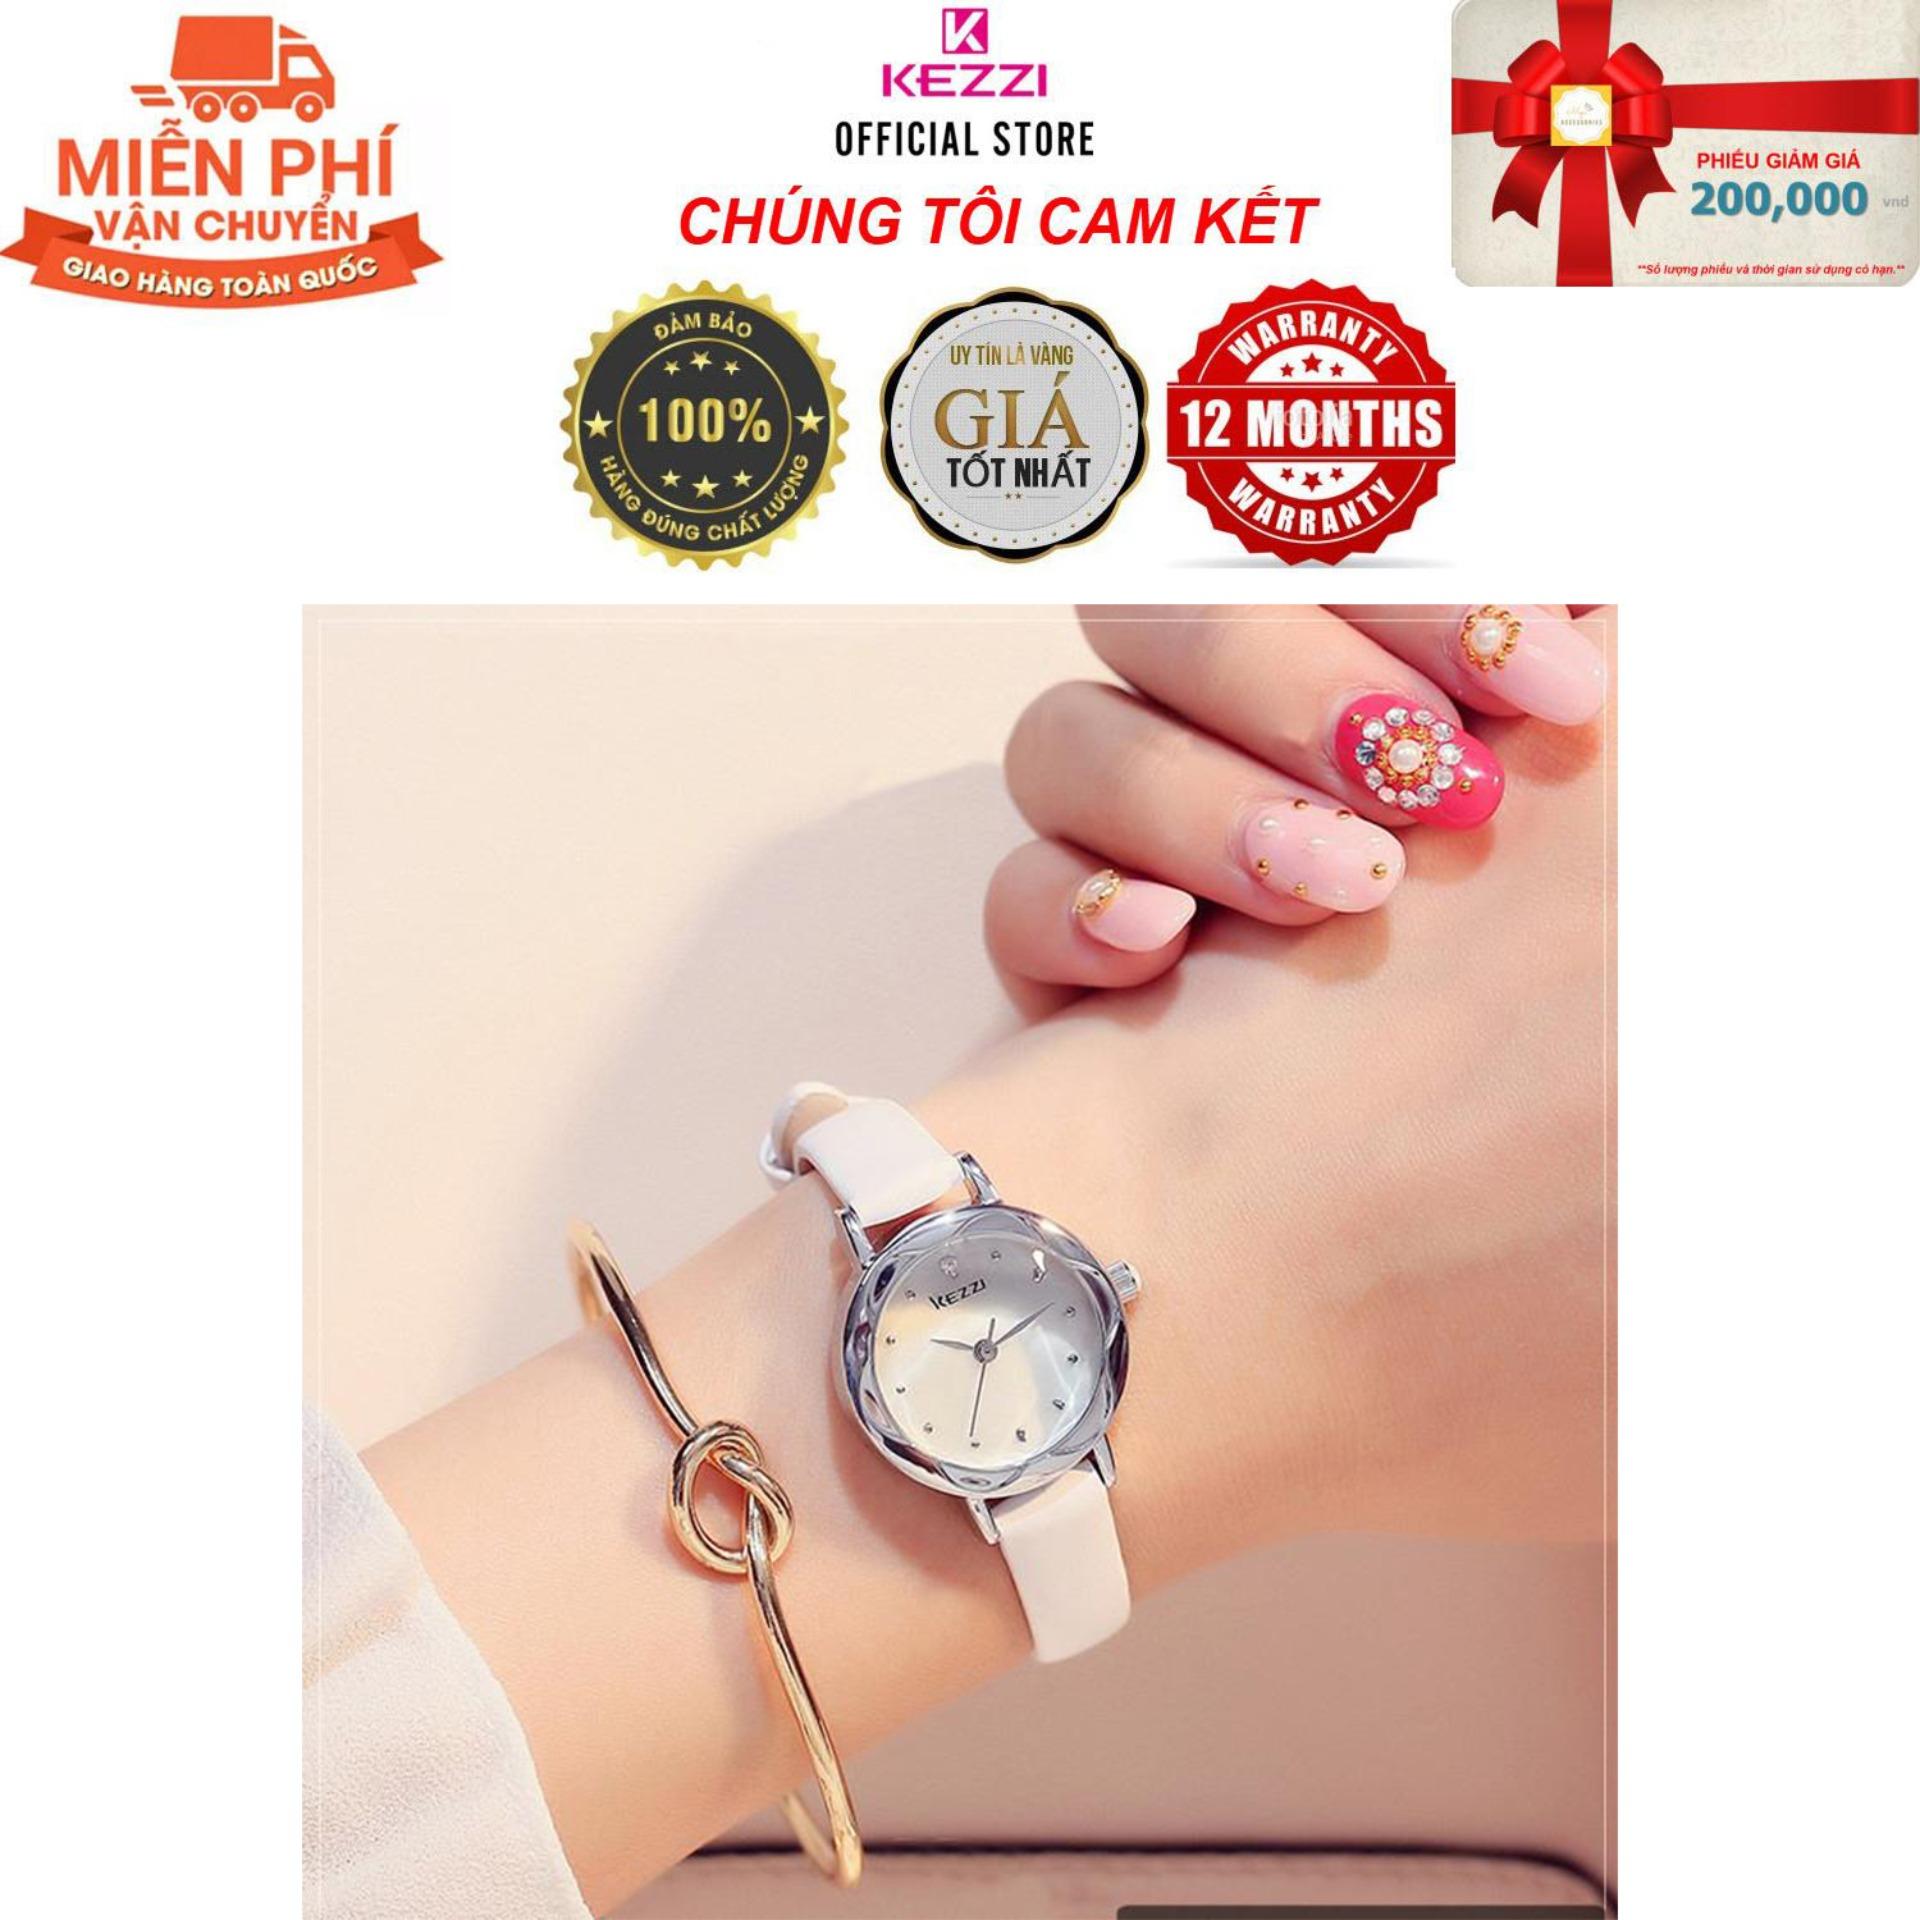 Đồng hồ nữ Kezzi K770 hàng chính hiệu KEZZI dây da mặt tròn - Đồng Hồ Nữ Thời Trang Công Sở Cao Cấp Kezzi K770 - Full Box - Dây Trắng